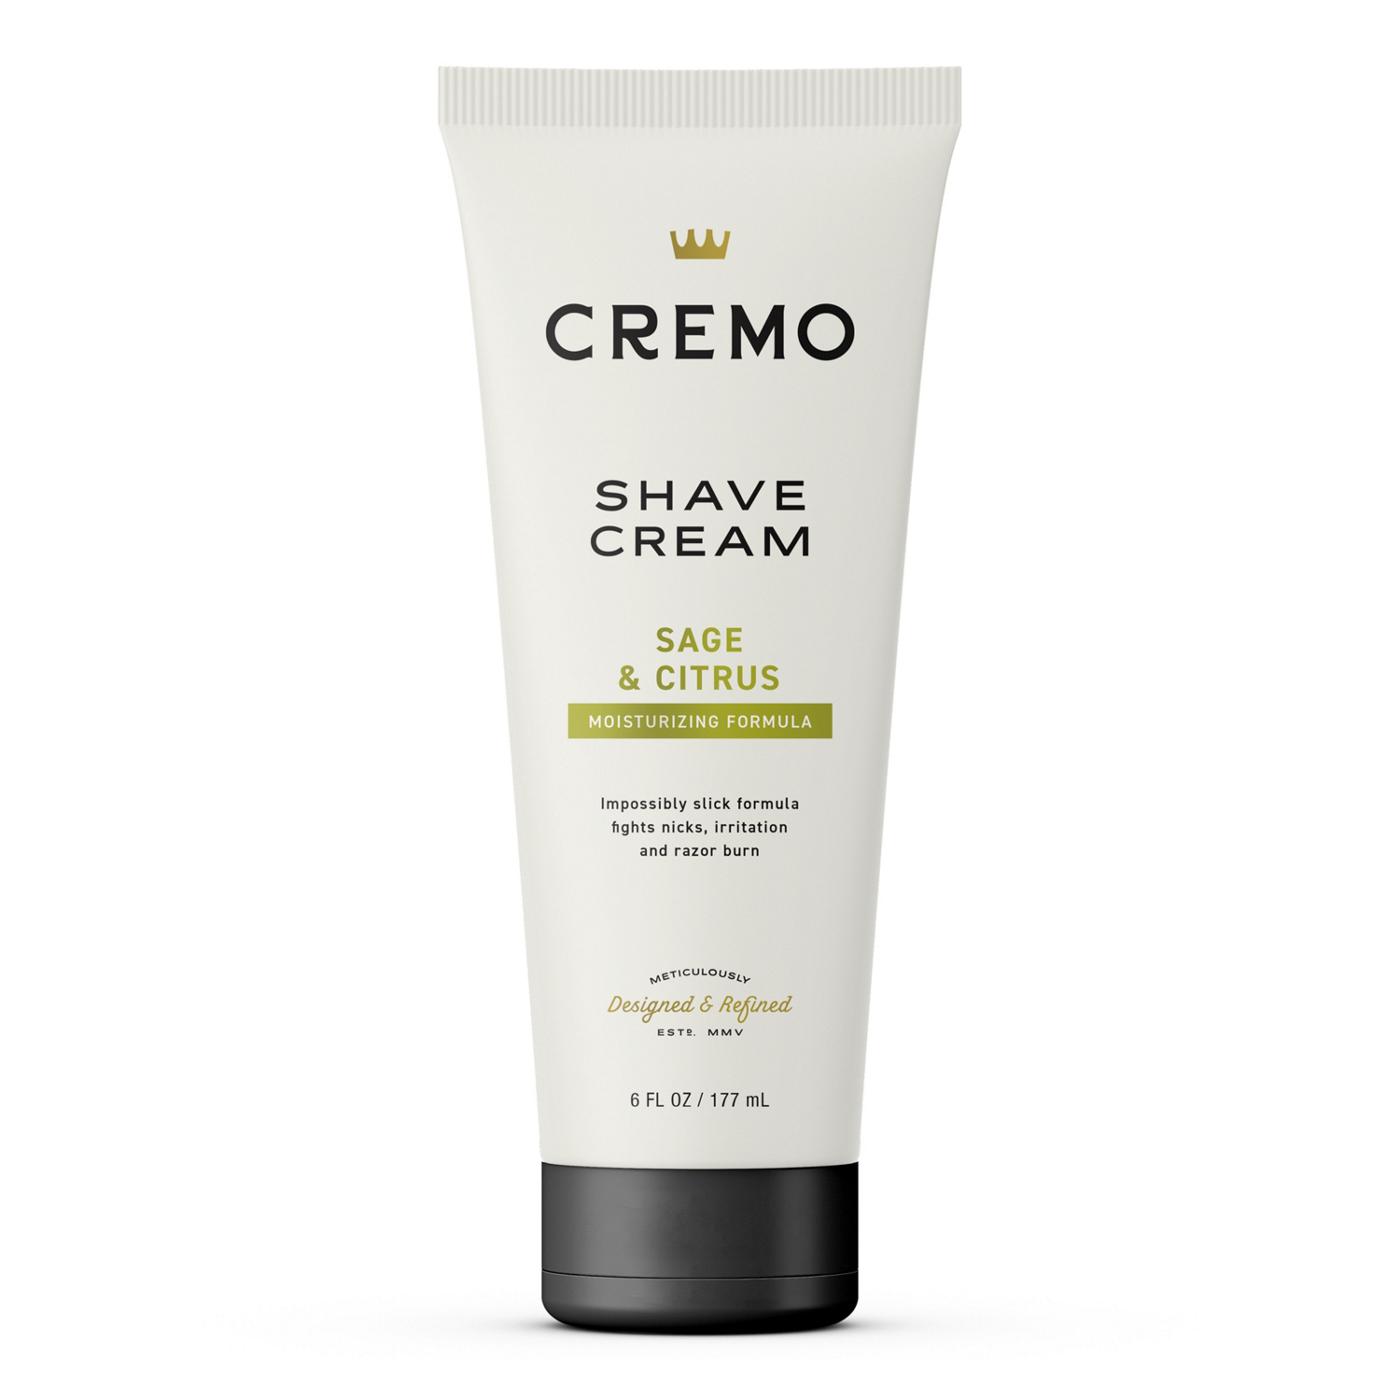 Cremo Shave Cream - Sage & Cistrus; image 1 of 6